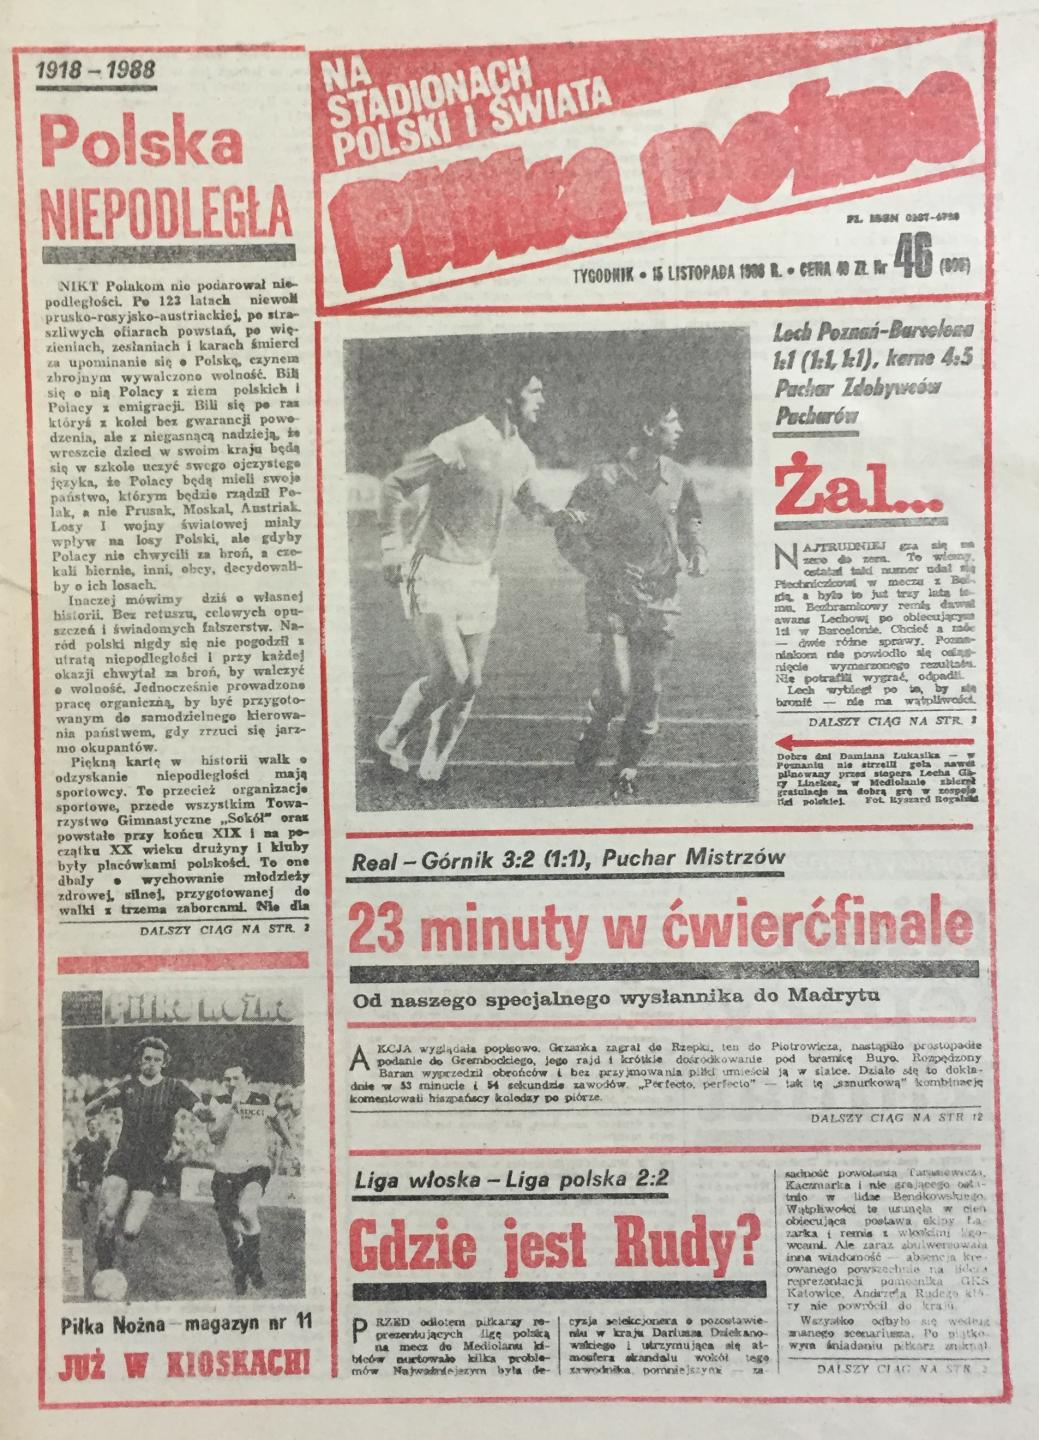 Piłka Nożna po Lech Poznań - FC Barcelona 1:1 (09.11.1988) 1